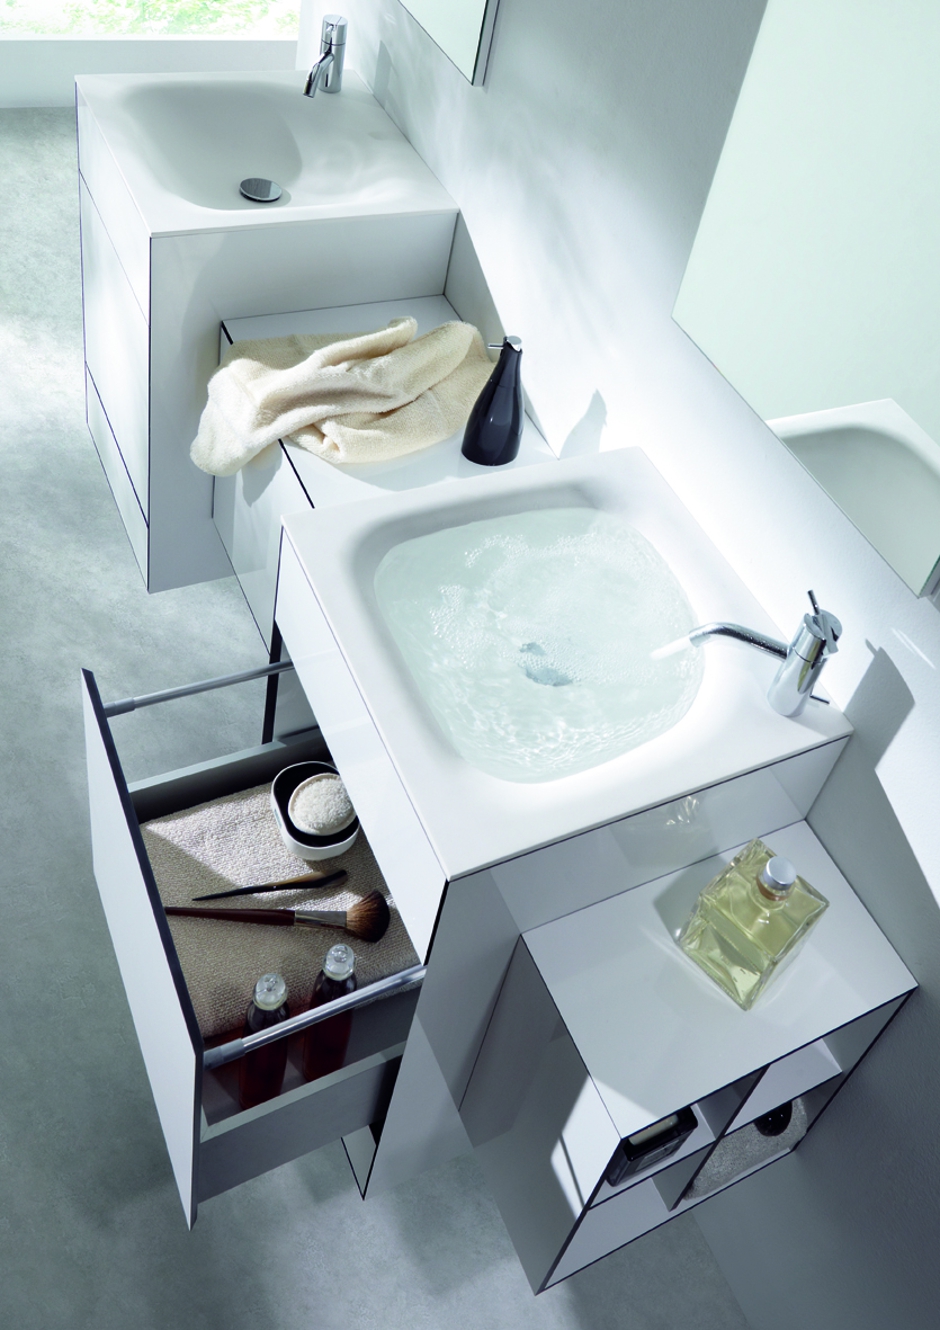 Mobiliario de baño modular OLA diseñada en laminado HPL arpa por discoh design para Sistema Midi